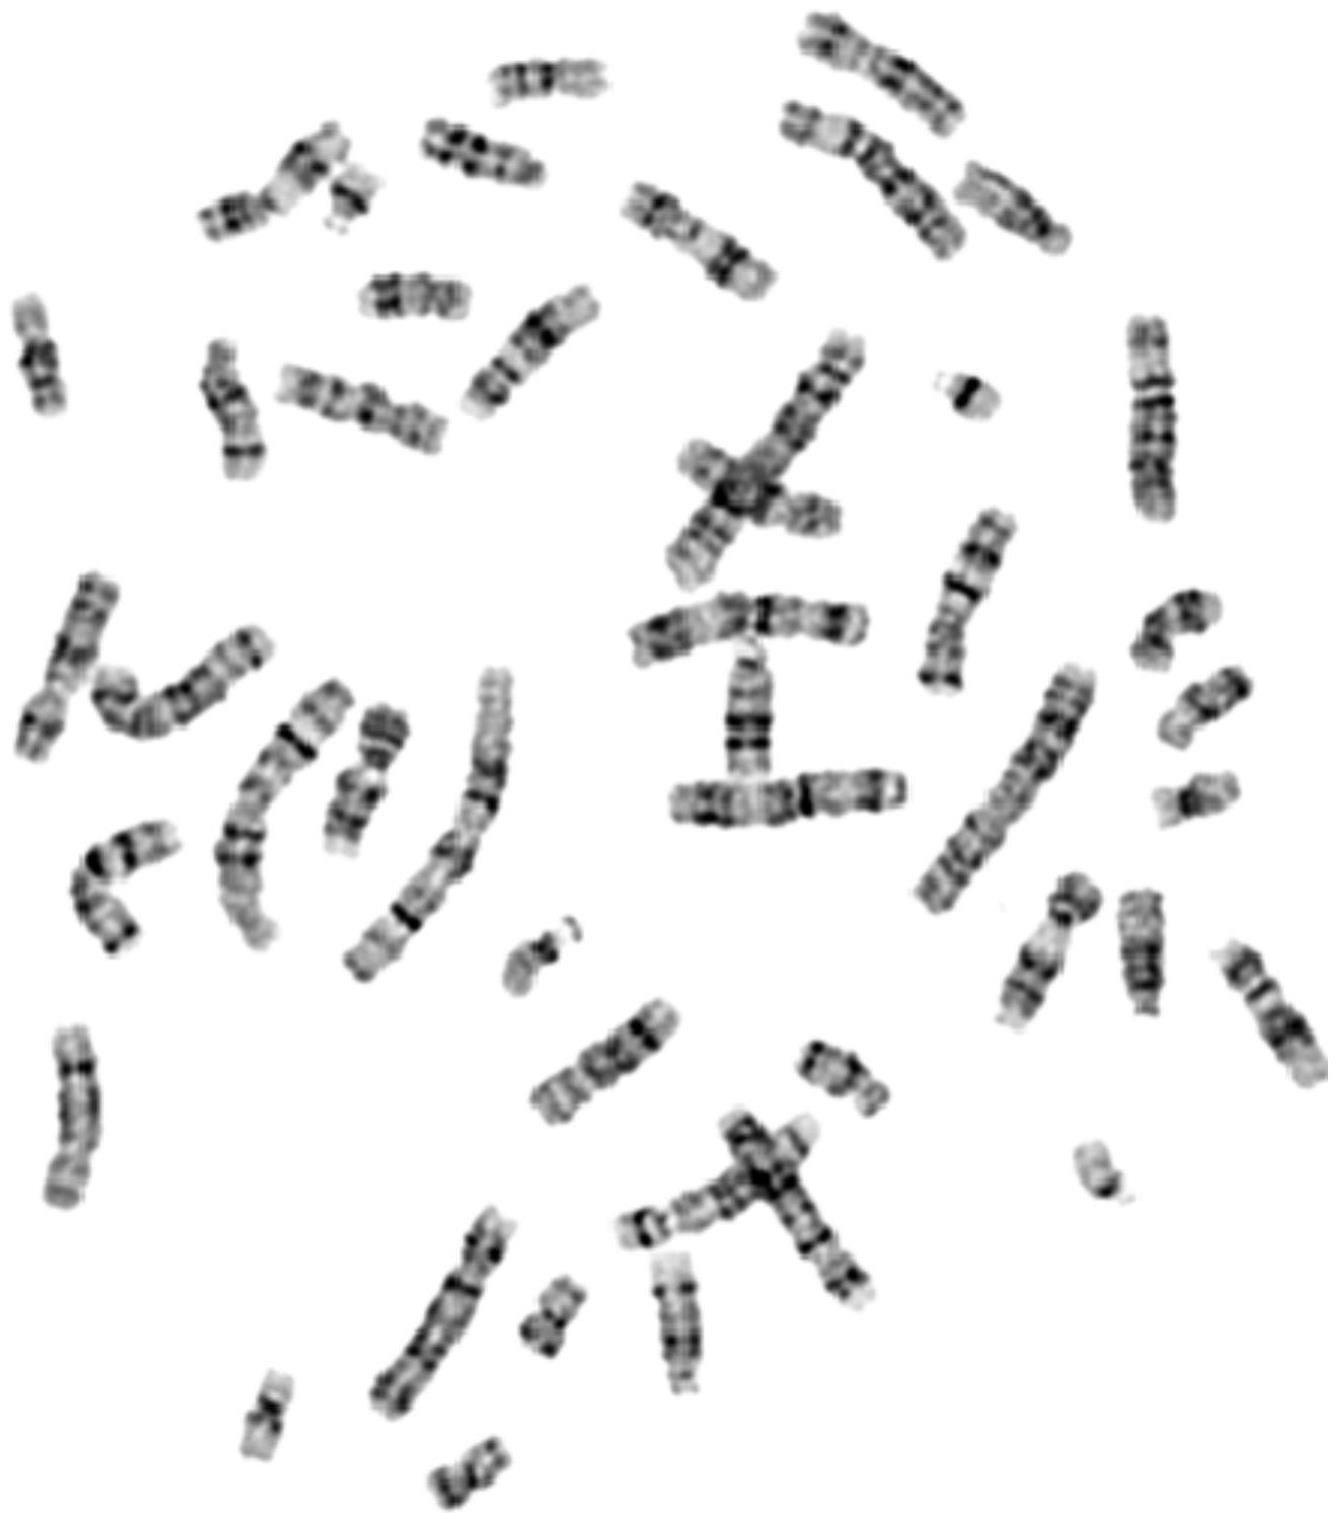 染色体核型分析模拟数据集的构建方法、构建装置、设备及存储介质与流程